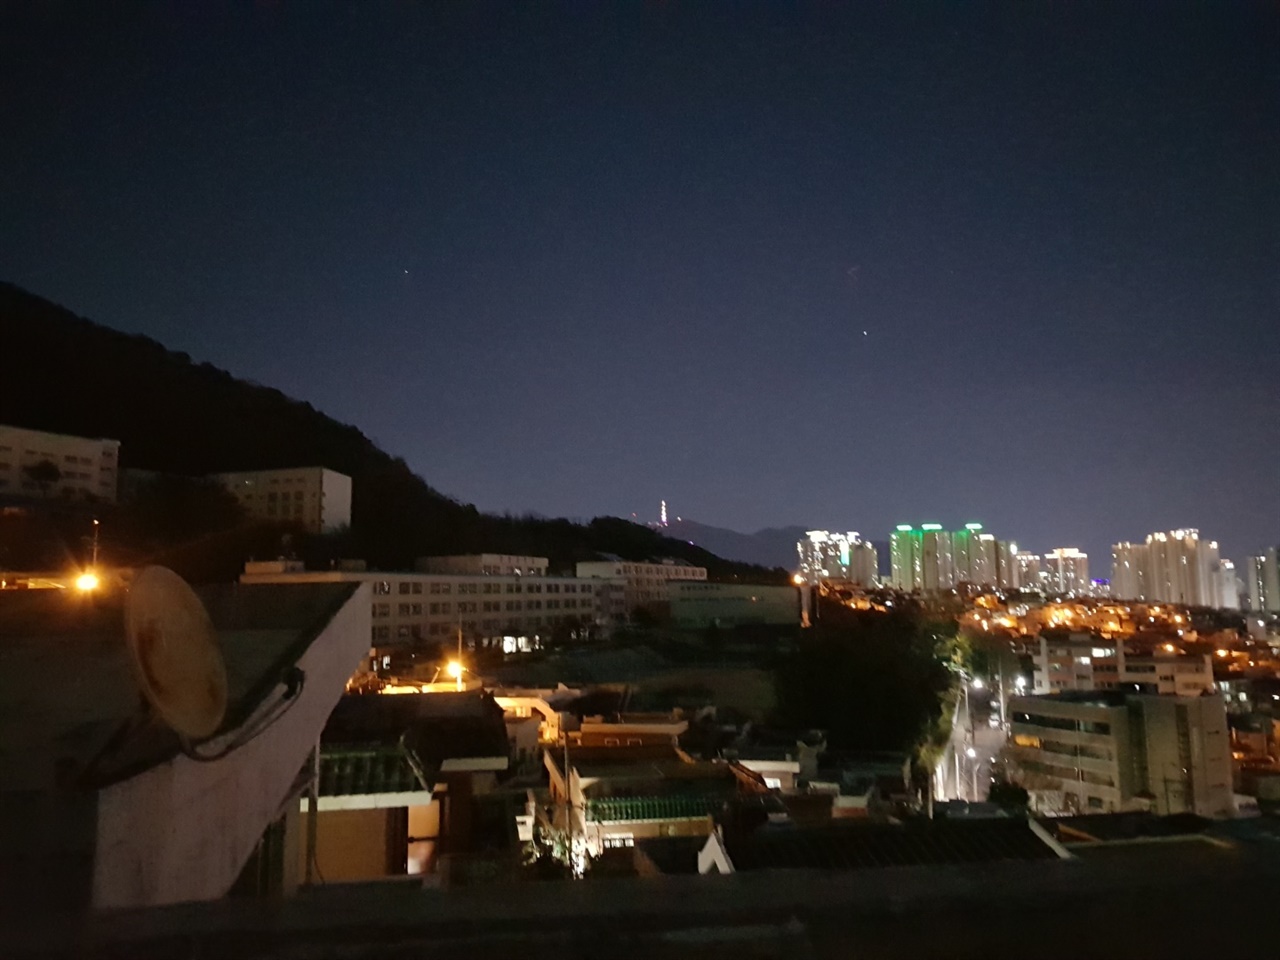 부산 진구 백양산 일대에 위치한 필자의 집 옥상에서 촬영한 야경